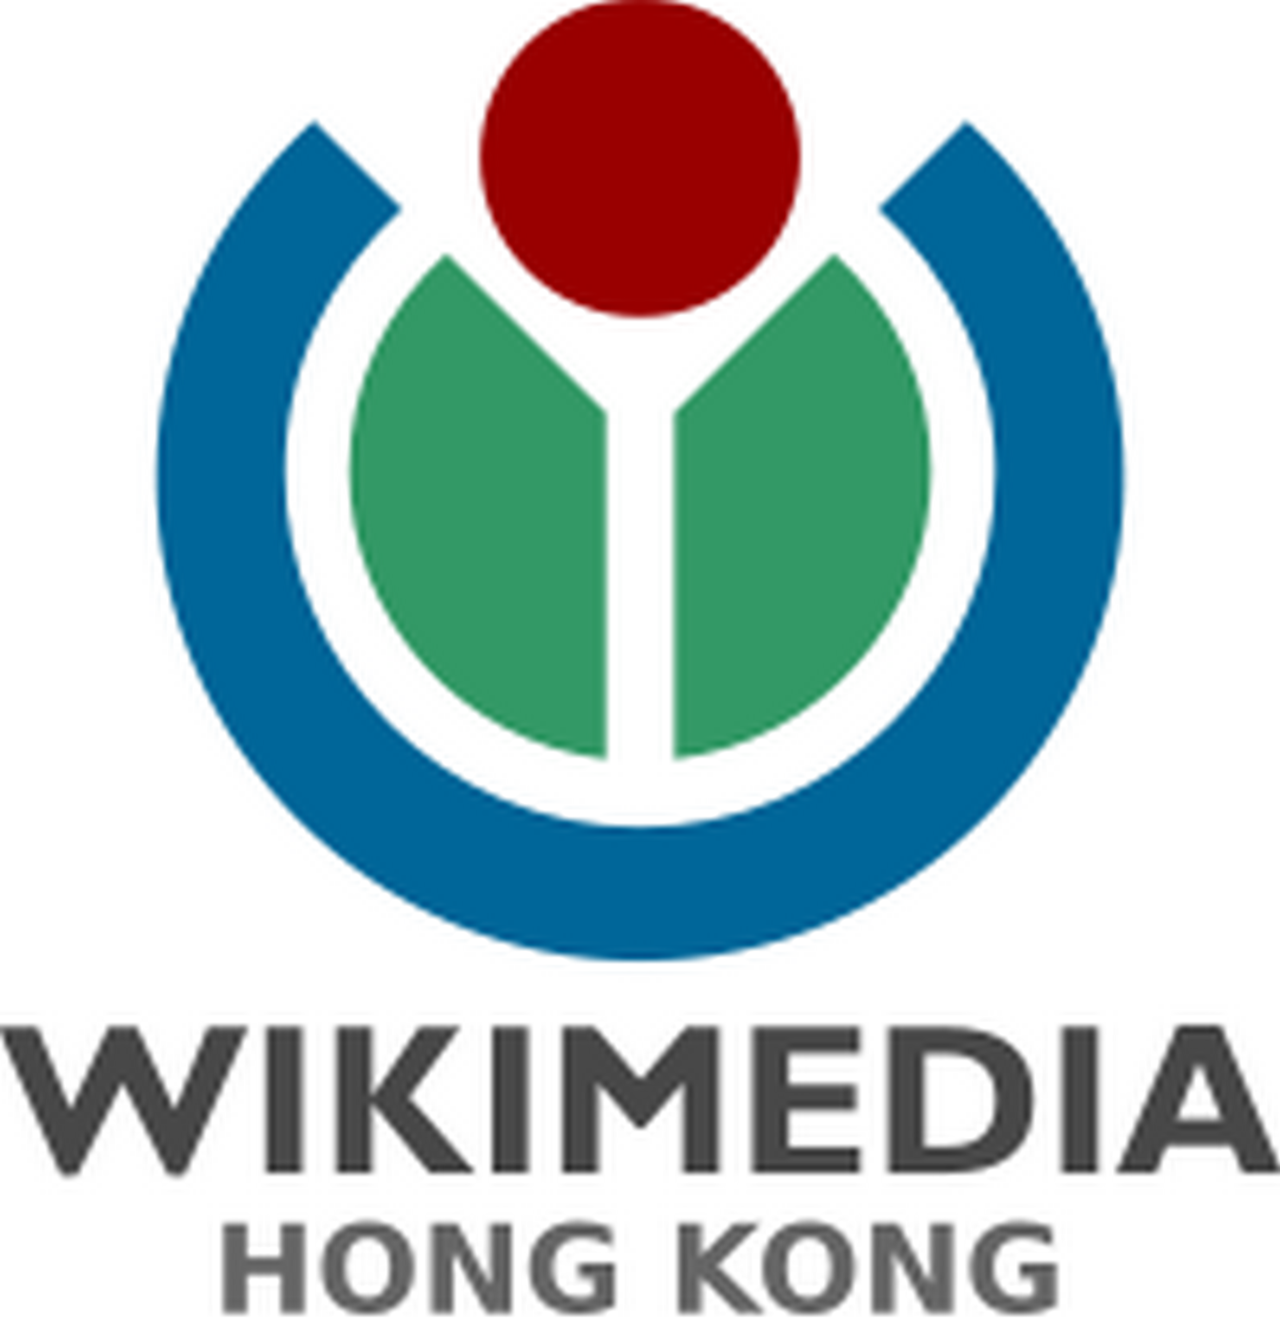 香港維基媒體協會